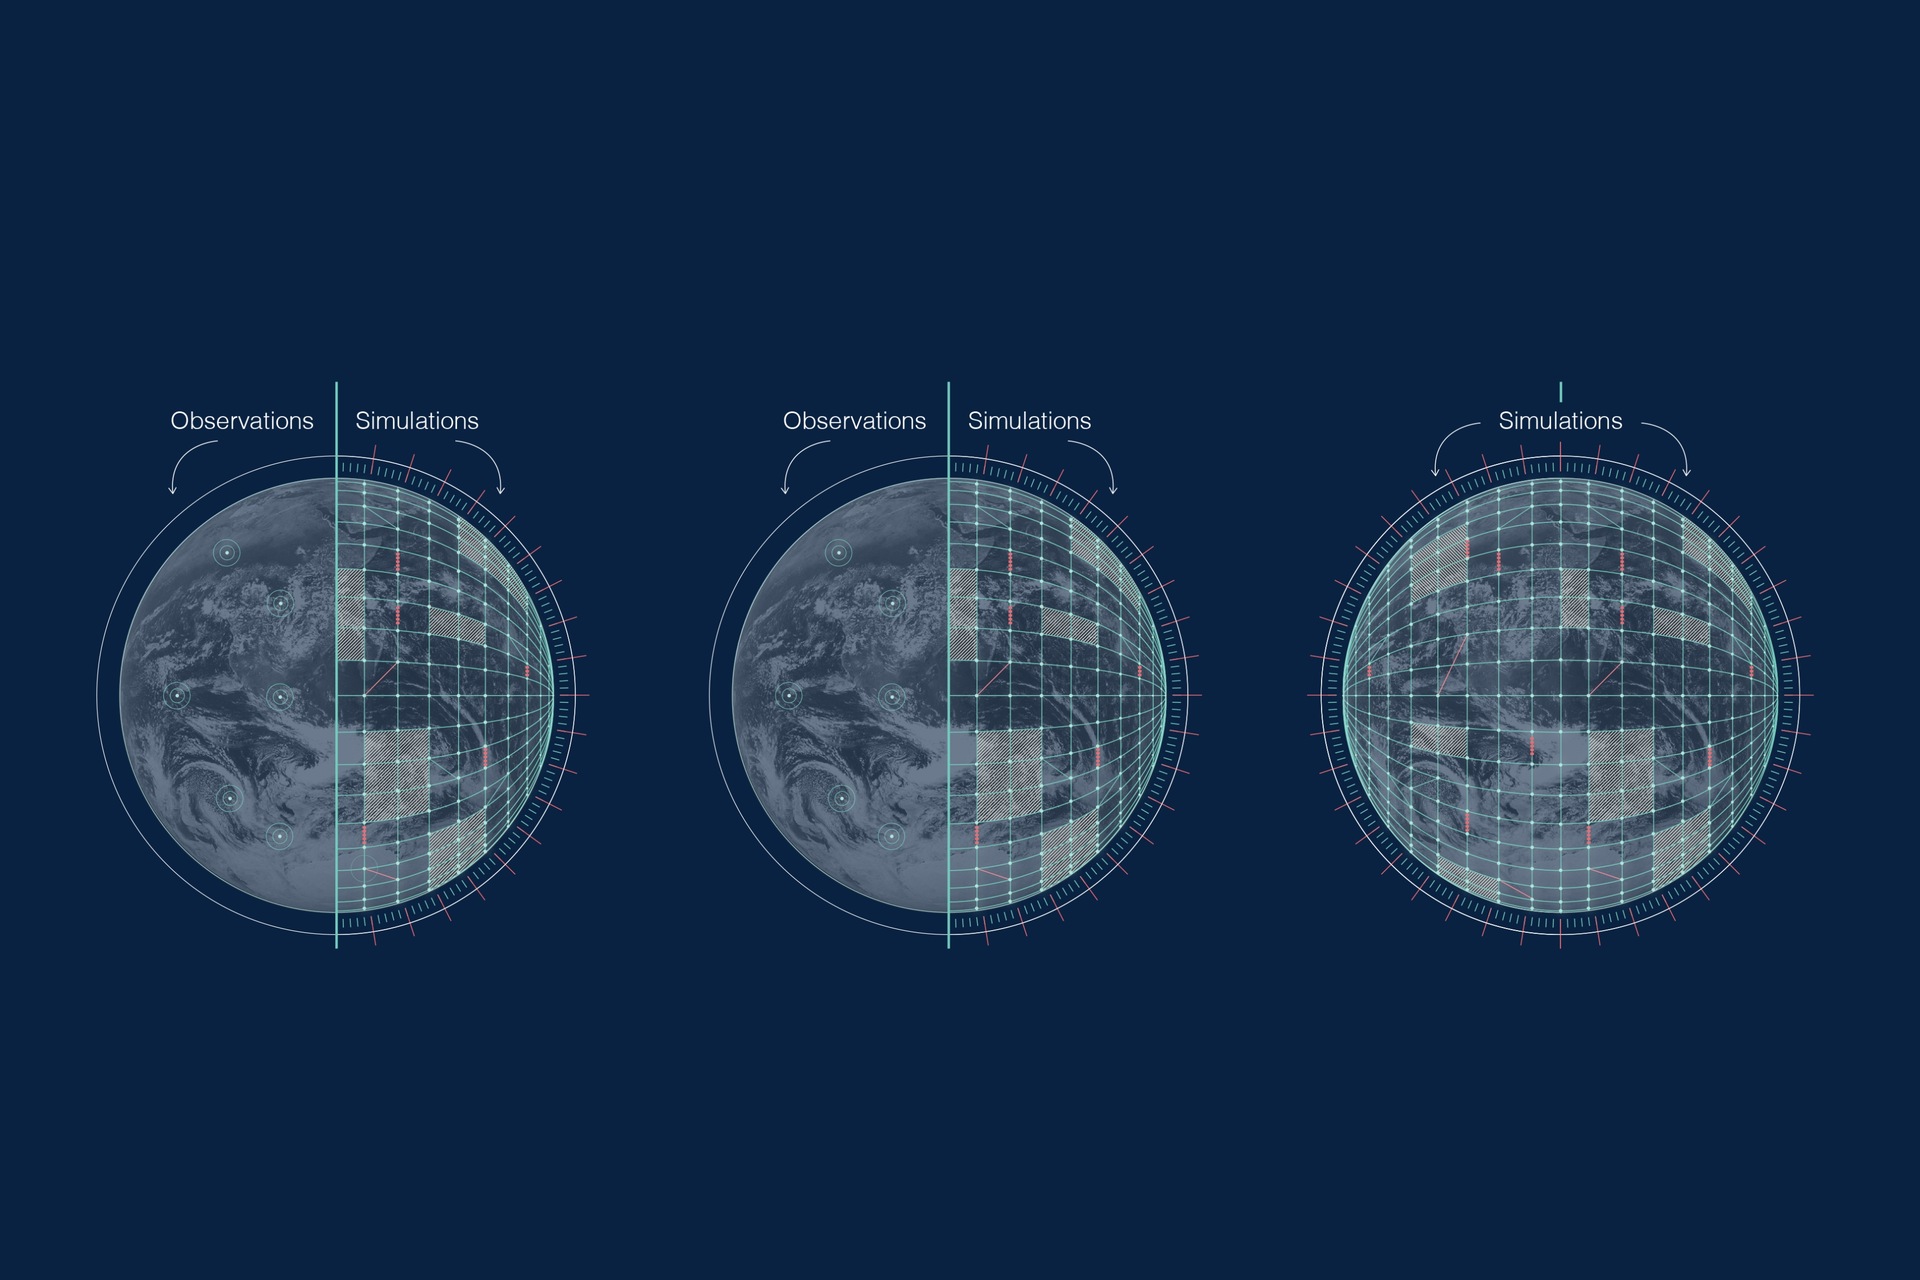 ECMWF और CINECA का इरादा पृथ्वी का एक डिजिटल जुड़वां बनाने का है